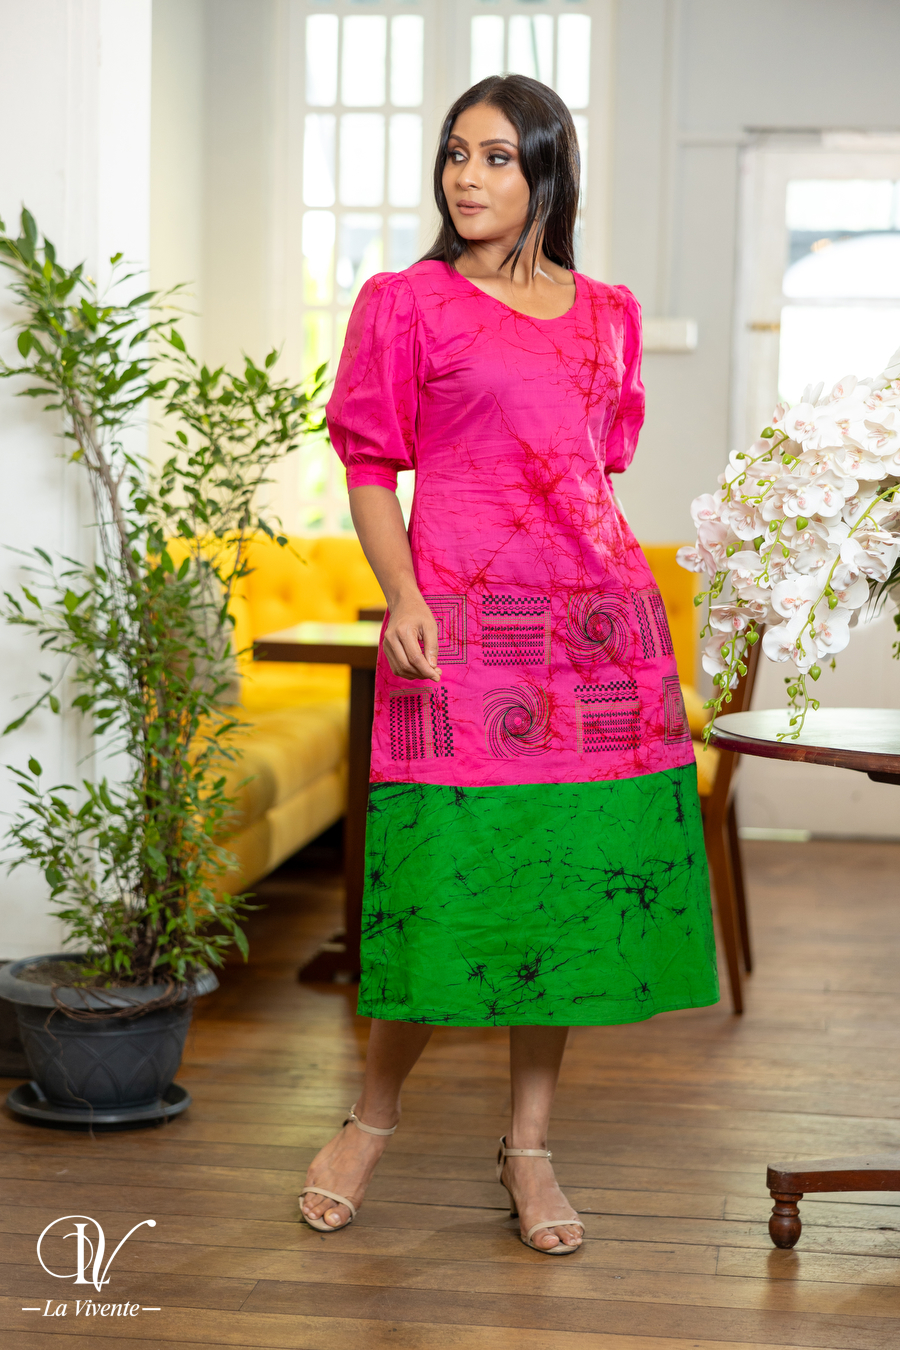 Two-Tone Embroidered Batik Midi Dress - La Vivente